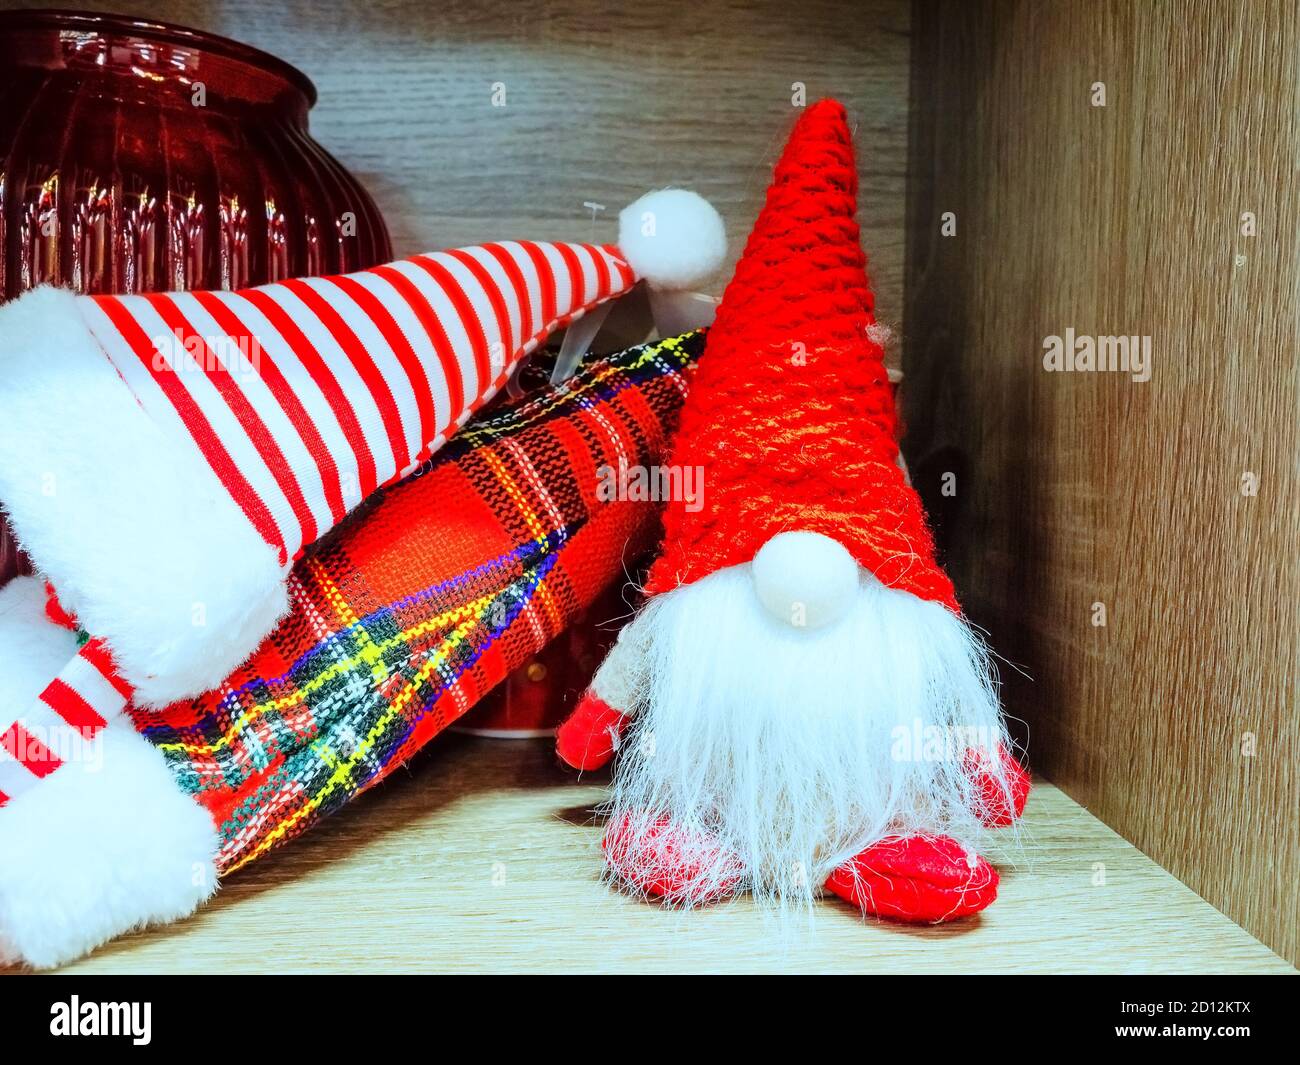 Plüsch-Spielzeug-Gnom auf dem Regal neben dem gestreiften Und karierte  Kappen Stockfotografie - Alamy